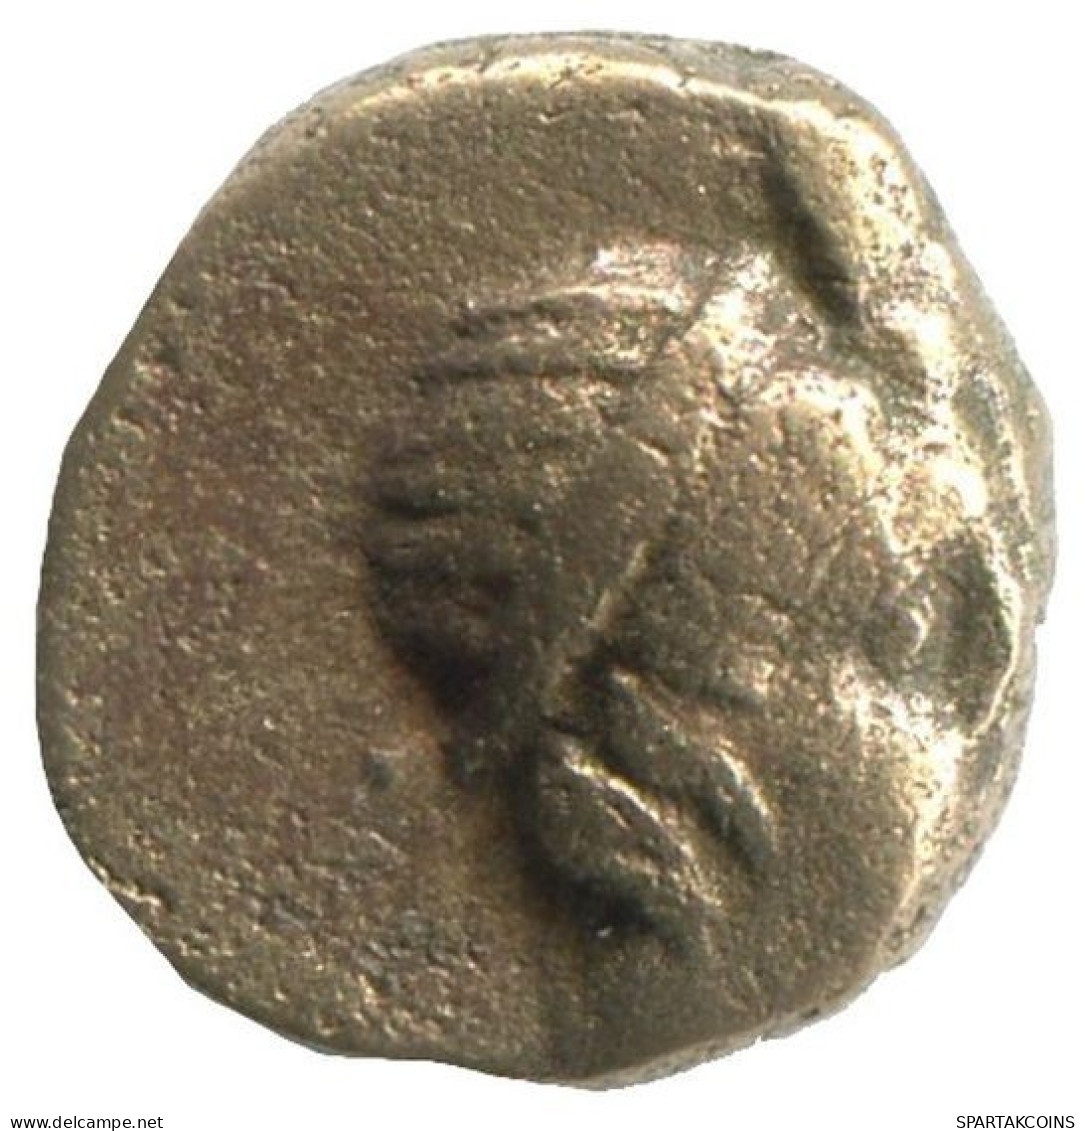 Auténtico Original GRIEGO ANTIGUO Moneda 1.3g/10mm #NNN1267.9.E.A - Griechische Münzen